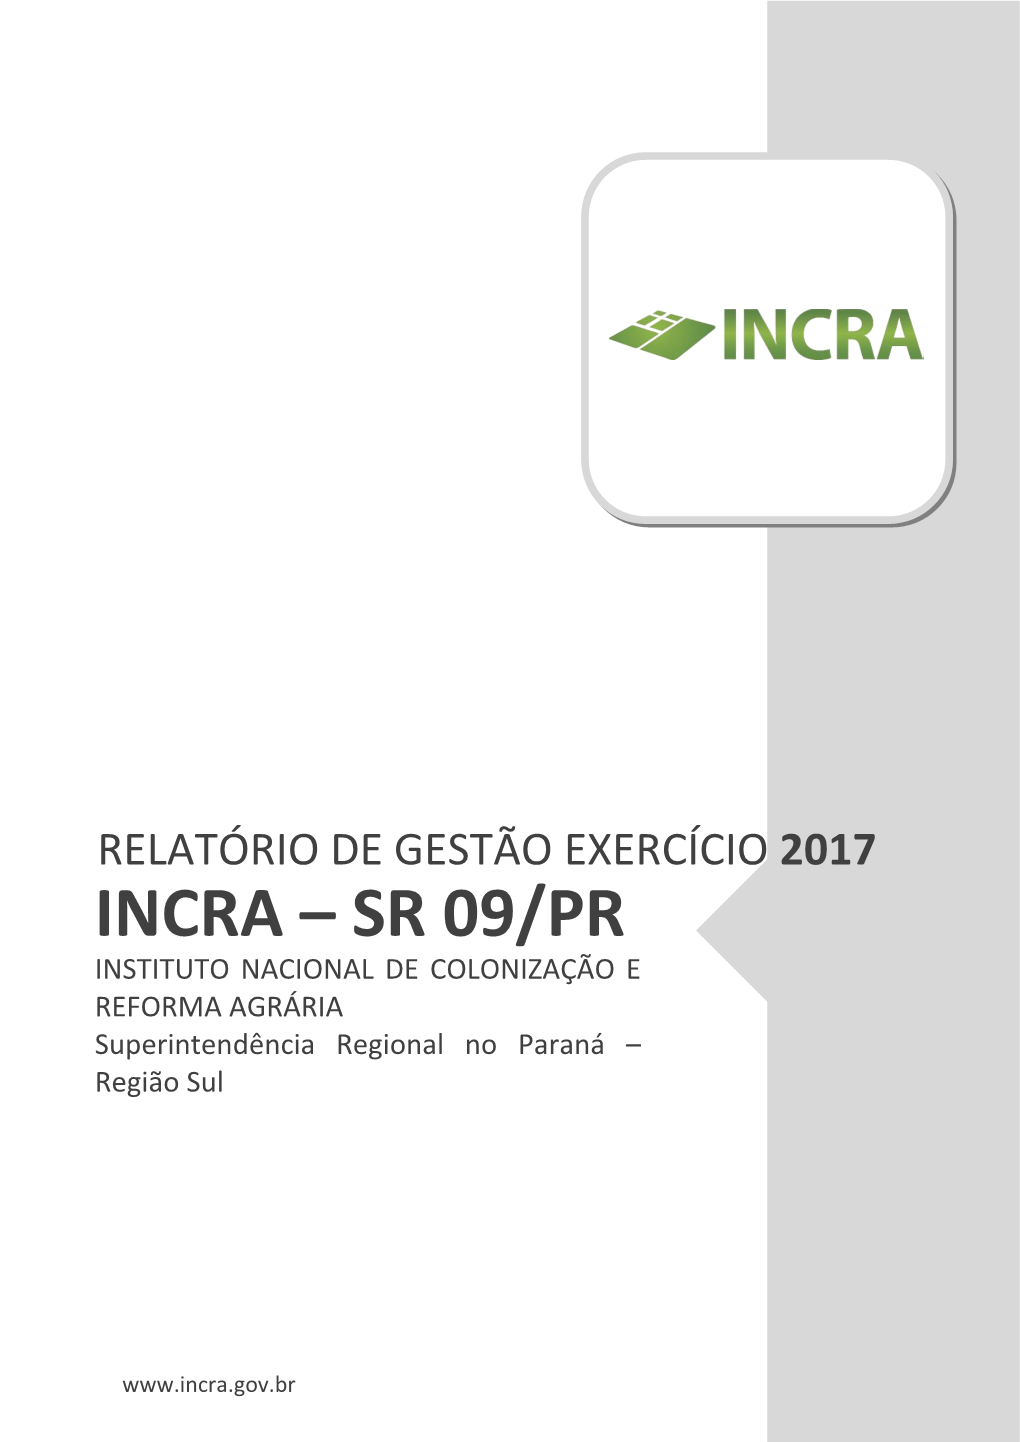 SR 09/PR INSTITUTO NACIONAL DE COLONIZAÇÃO E REFORMA AGRÁRIA Superintendência Regional No Paraná – Região Sul